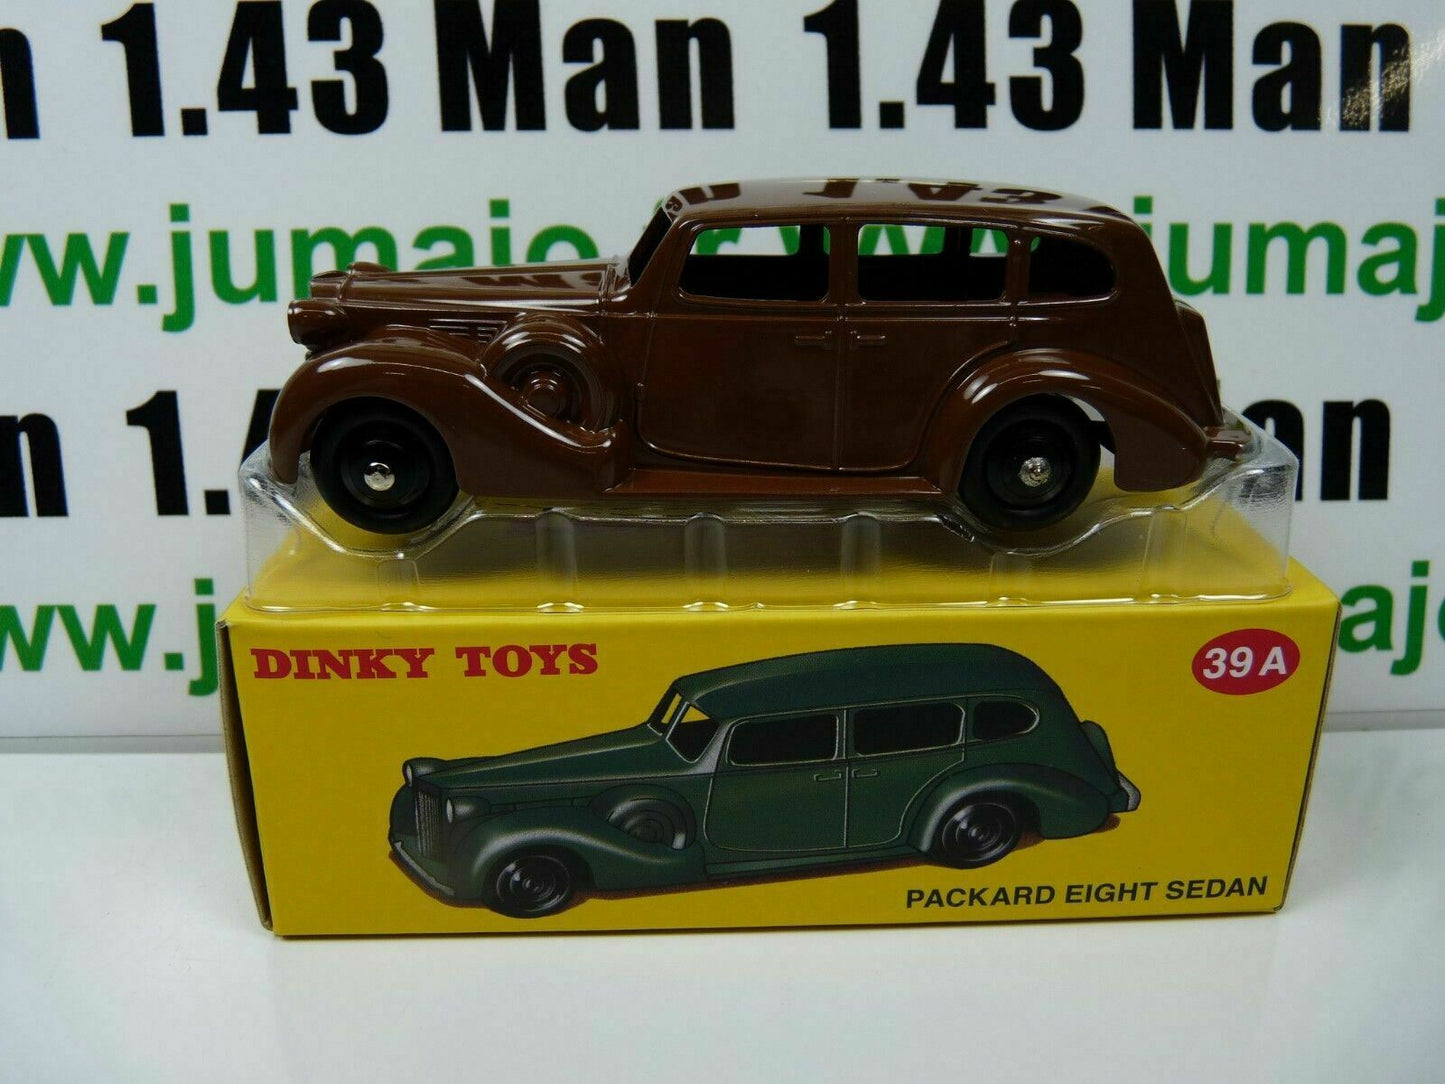 DT220 Voiture 1/43 réédition DINKY TOYS DeAgostini : Packard eight Sedan Marron